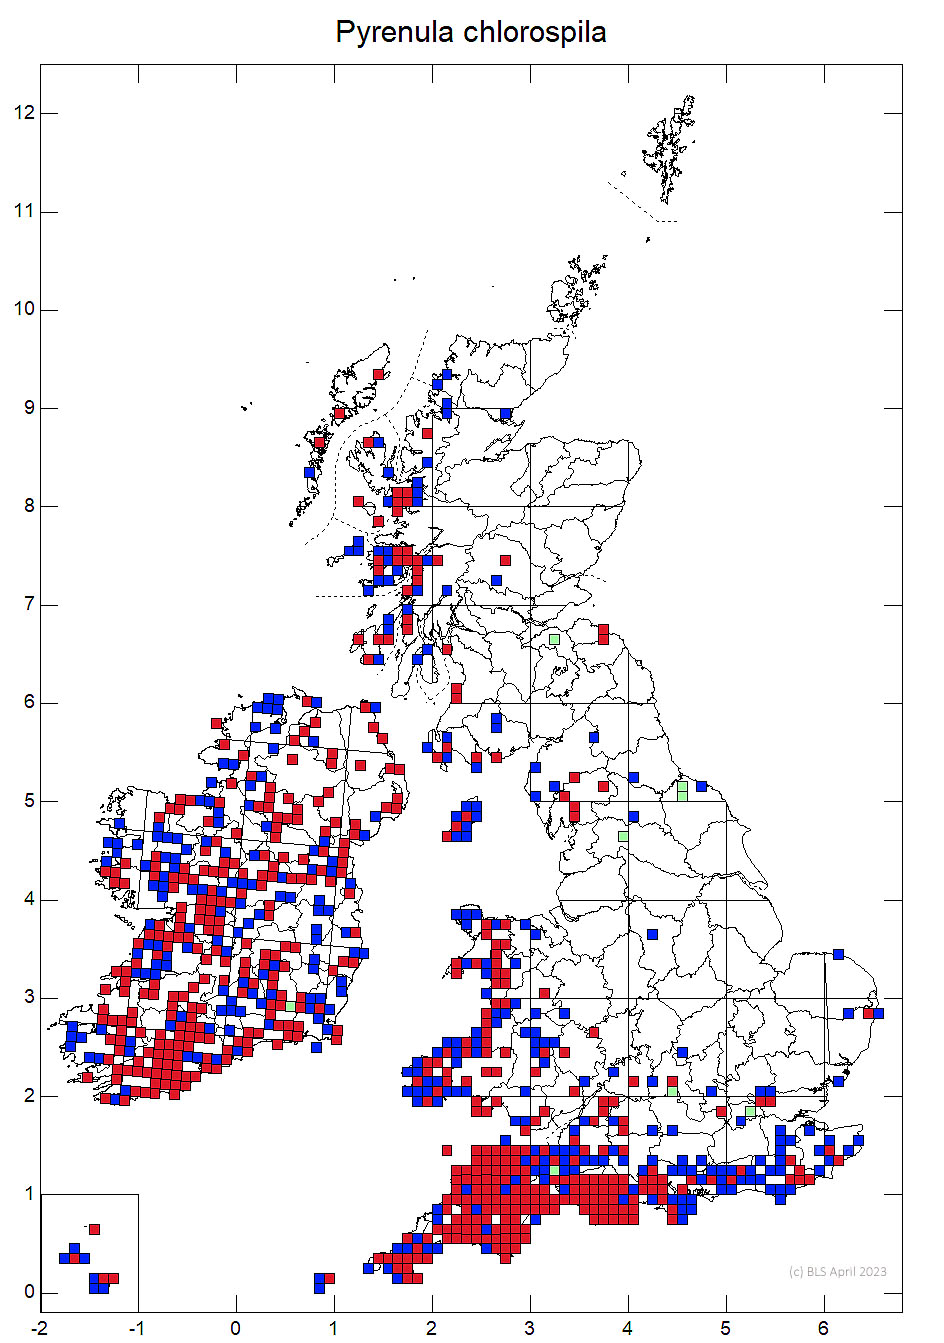 Pyrenula chlorospila 10km sq distribution map